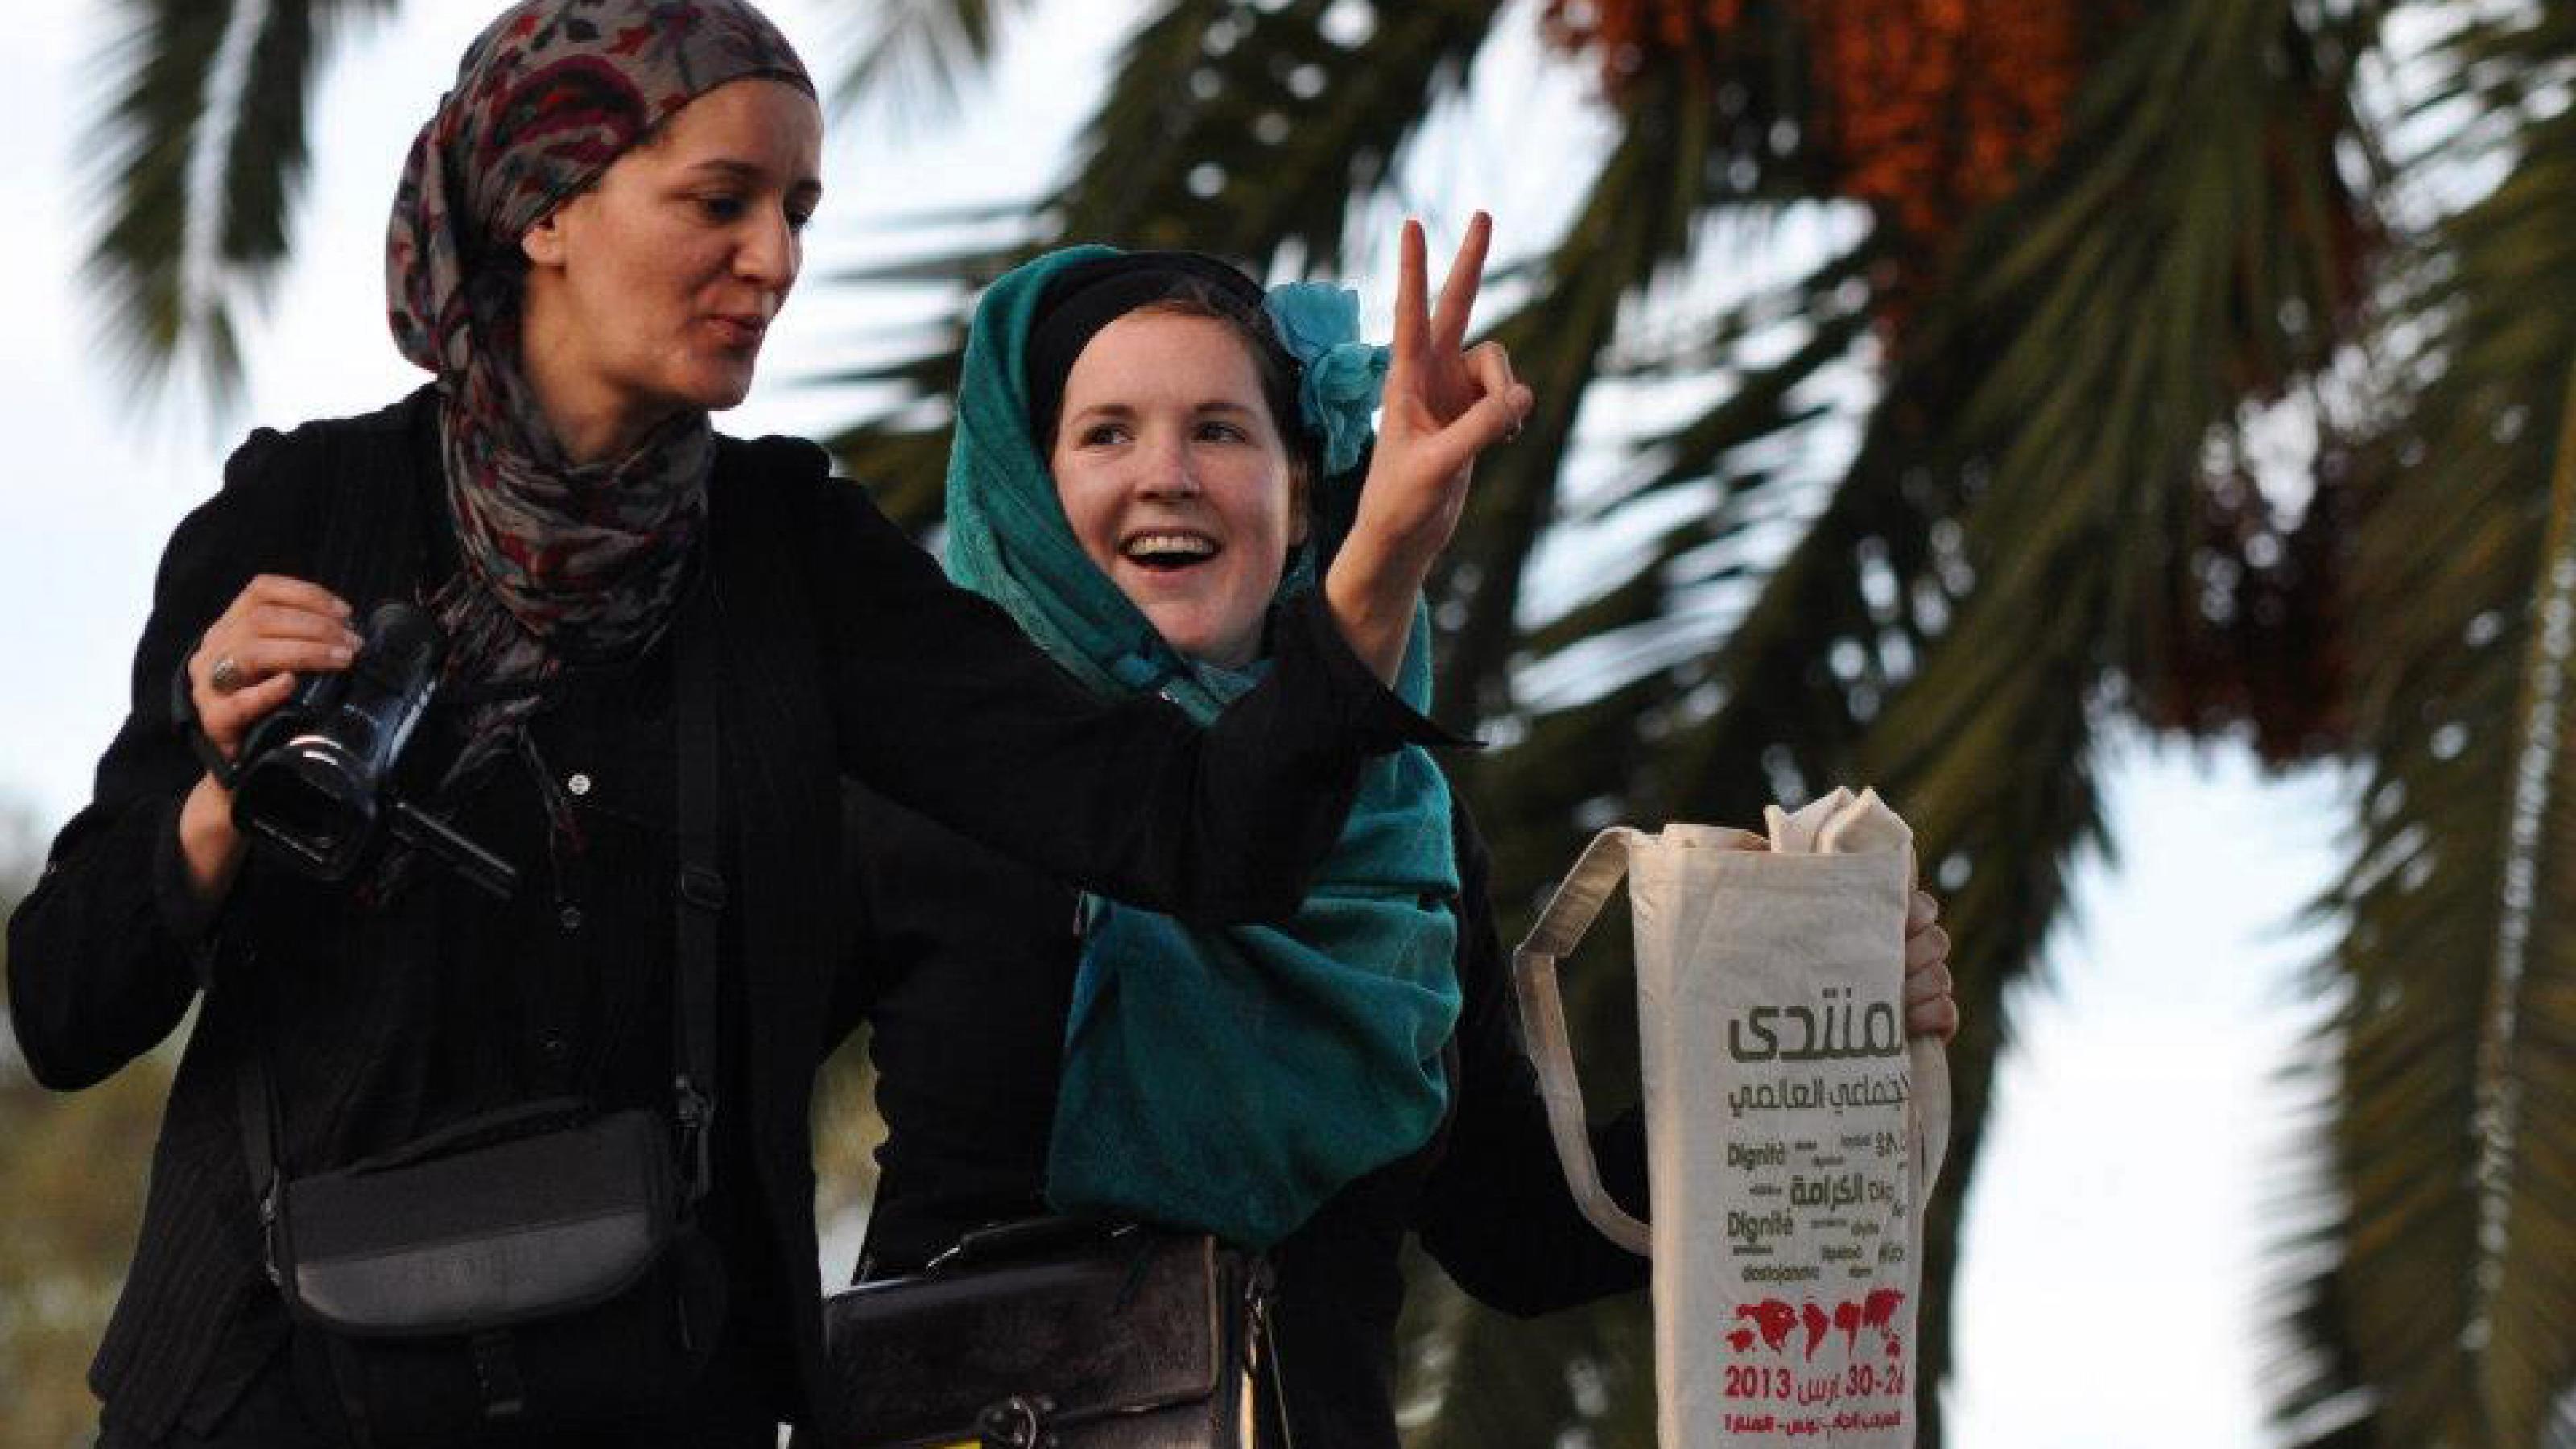 Zwei Frauen, die in Tunis, Tunesien, auf einer Demonstration auf das Dach einer Bushaltestelle geklettert sind. Eine Frau hält eine Kamera in der Hand und macht mit der anderen das Victory-Zeichen, die andere halt einen Stoffbeutel mit dem Logo des Weltsozialforums hoch.